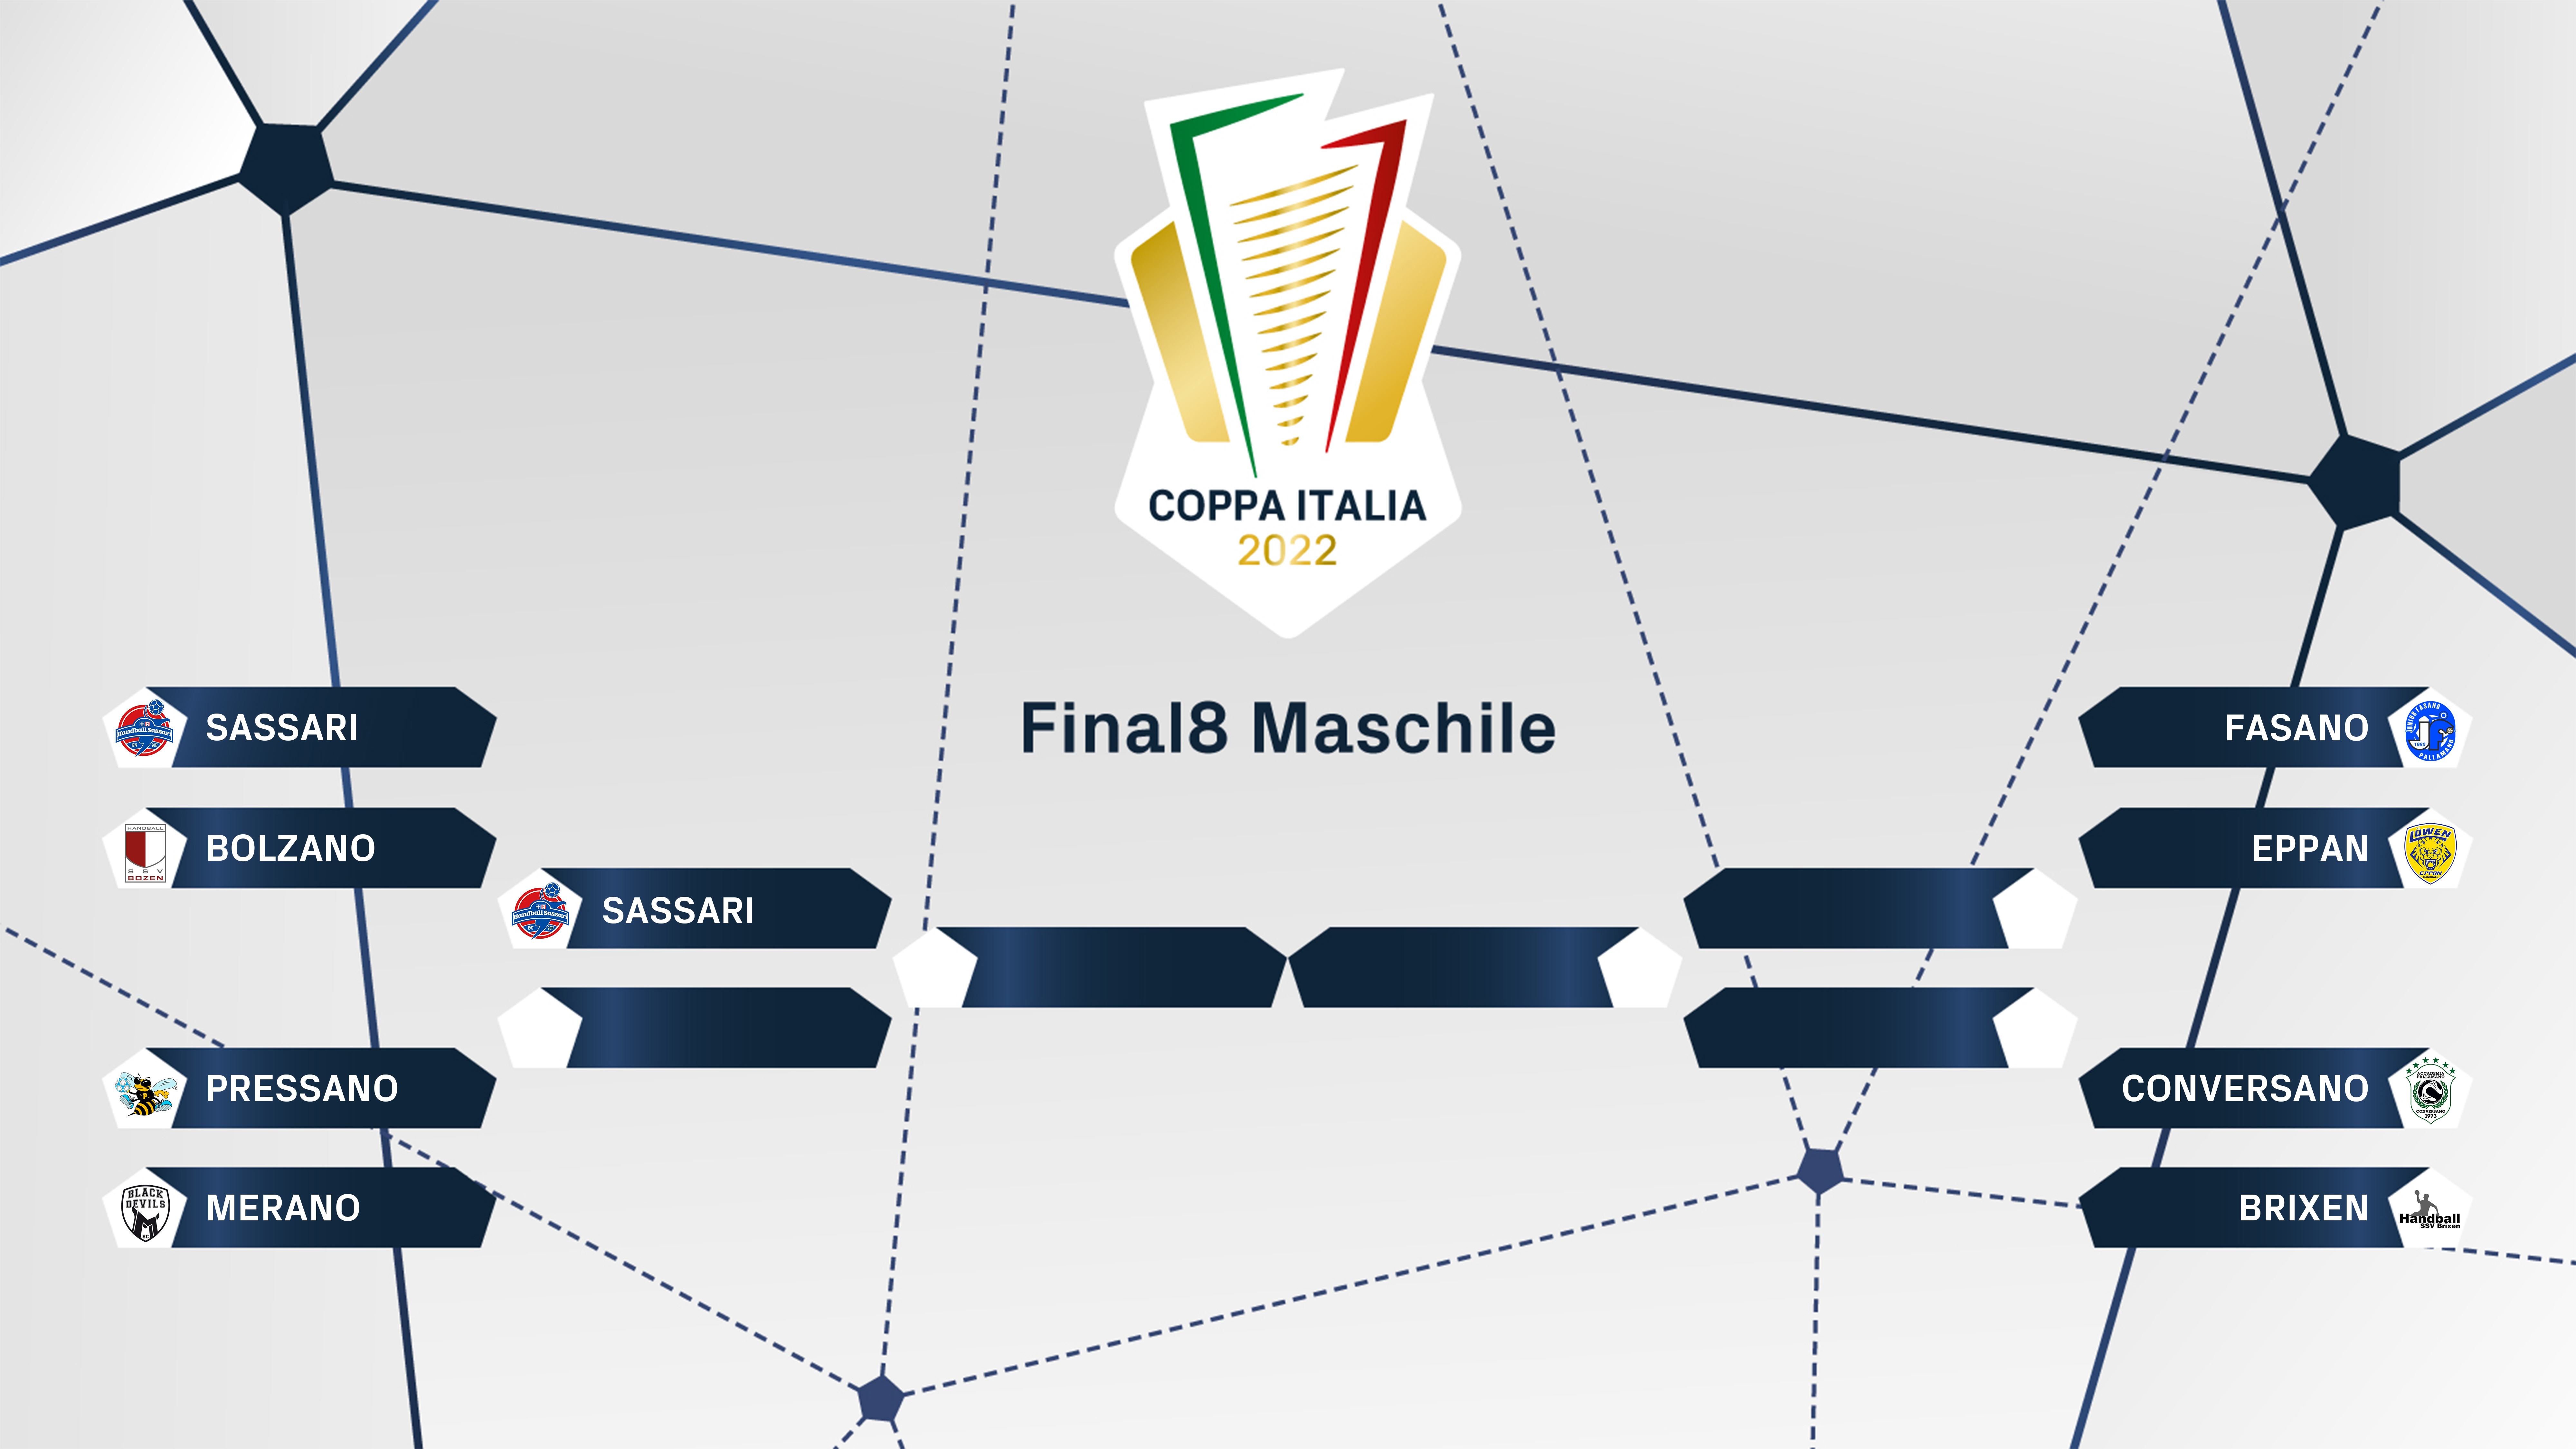 FIGH Coppa Italia tabelloni maschile